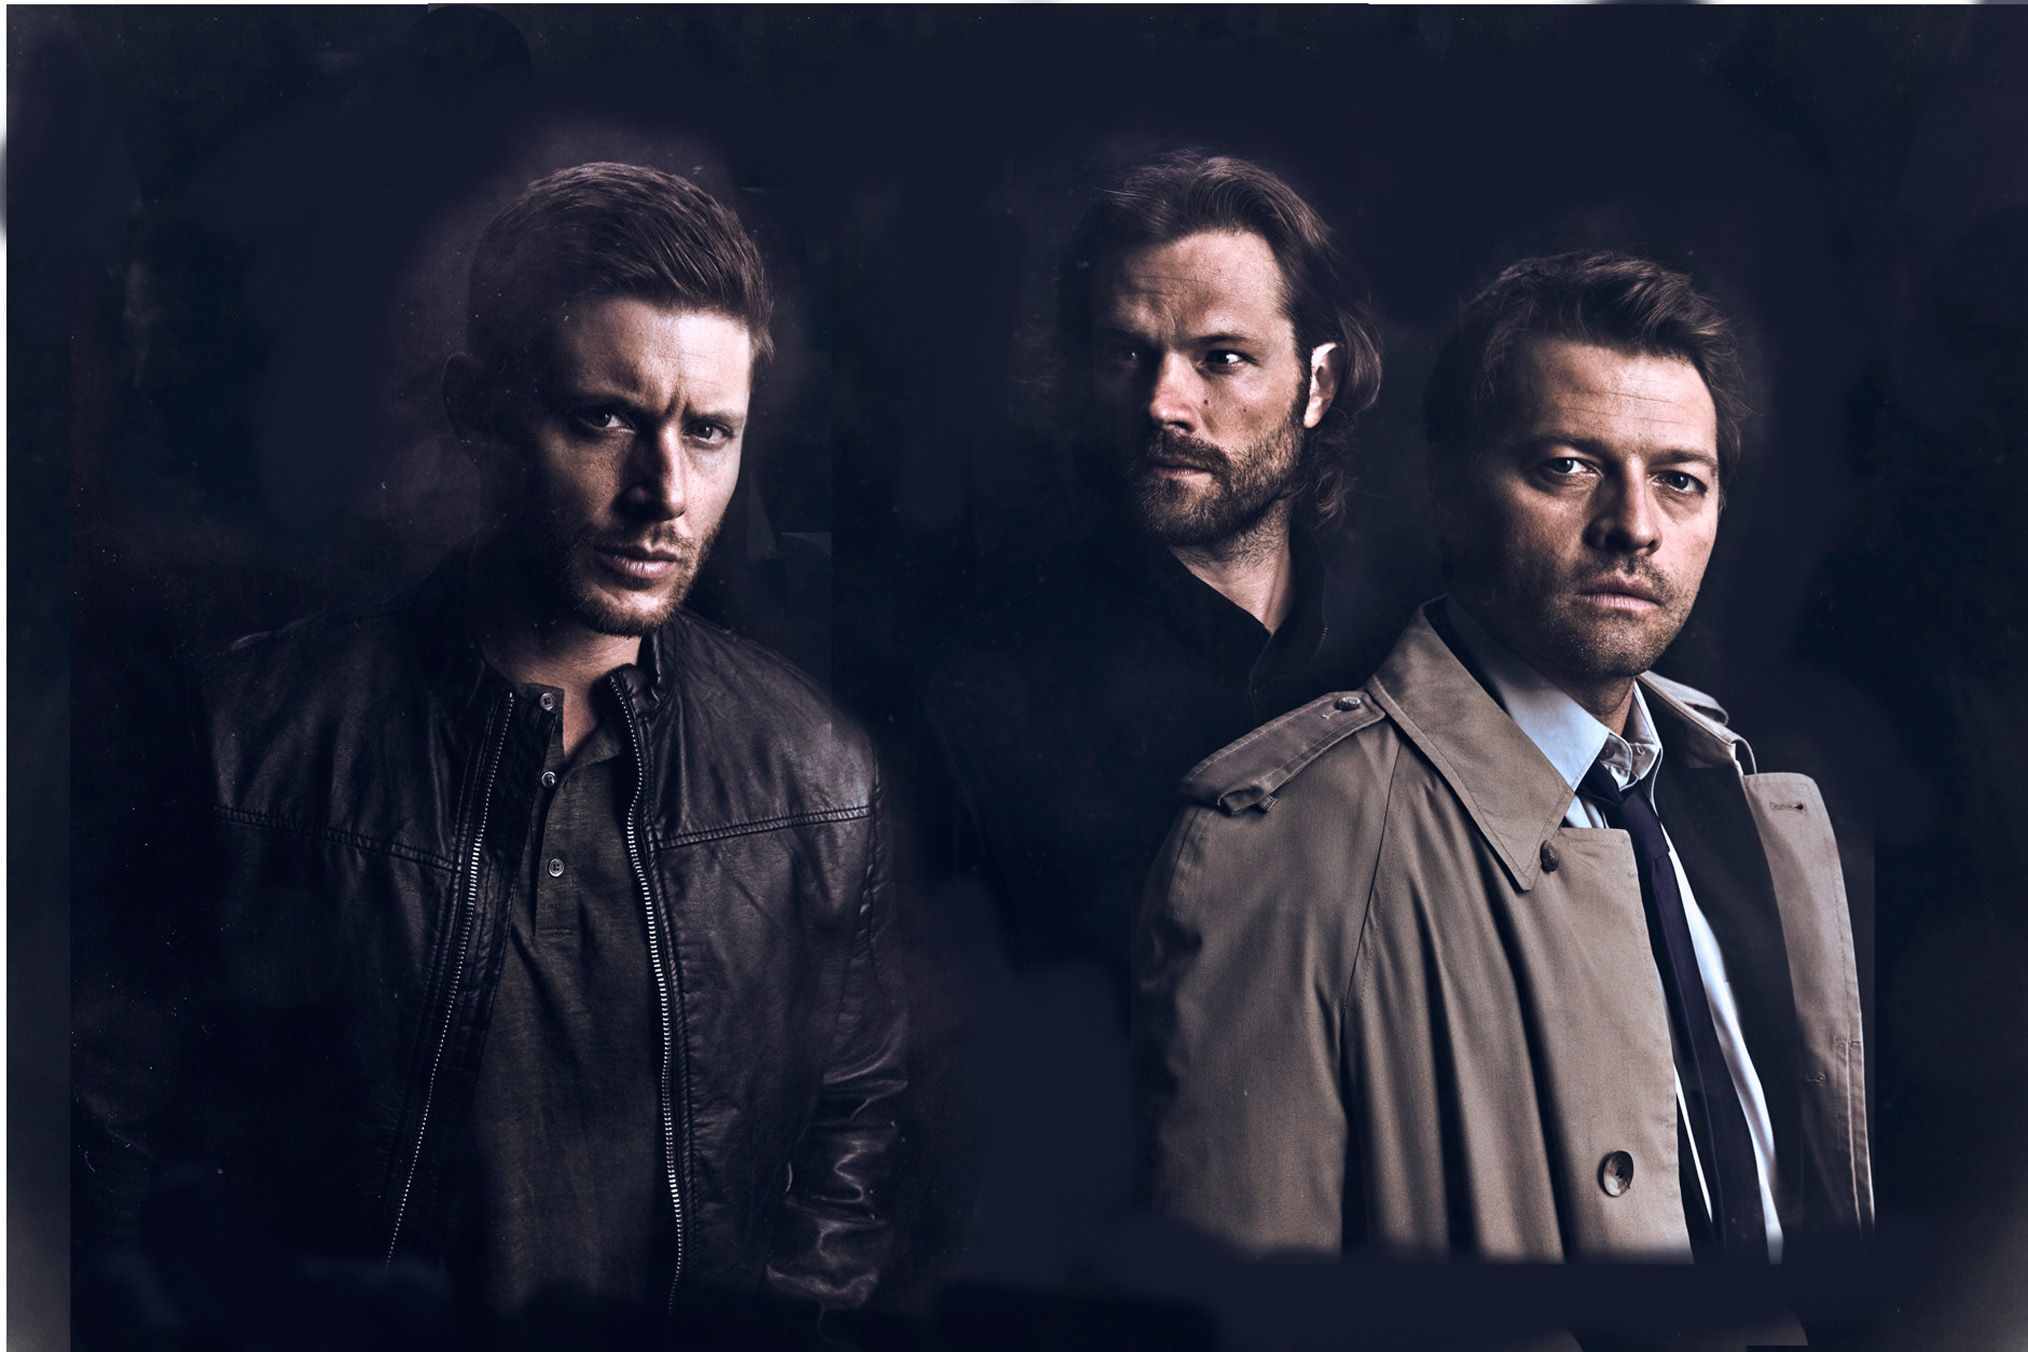 Supernatural S14 Cast Poster. Supernatural seasons, Supernatural, Supernatural season 14